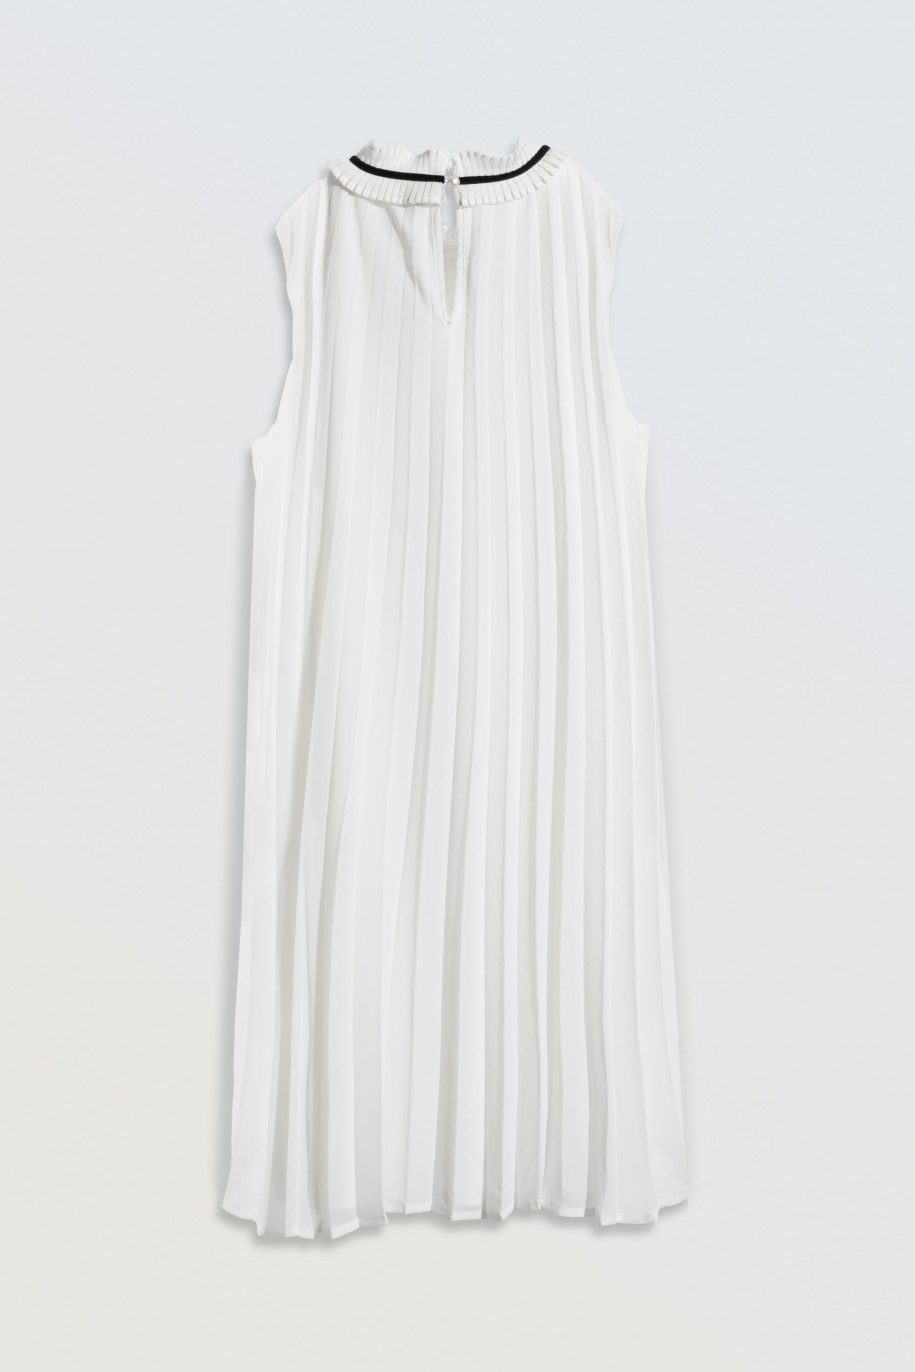 Biała sukienka plisowana z ozdobnym dekoltem - 46474